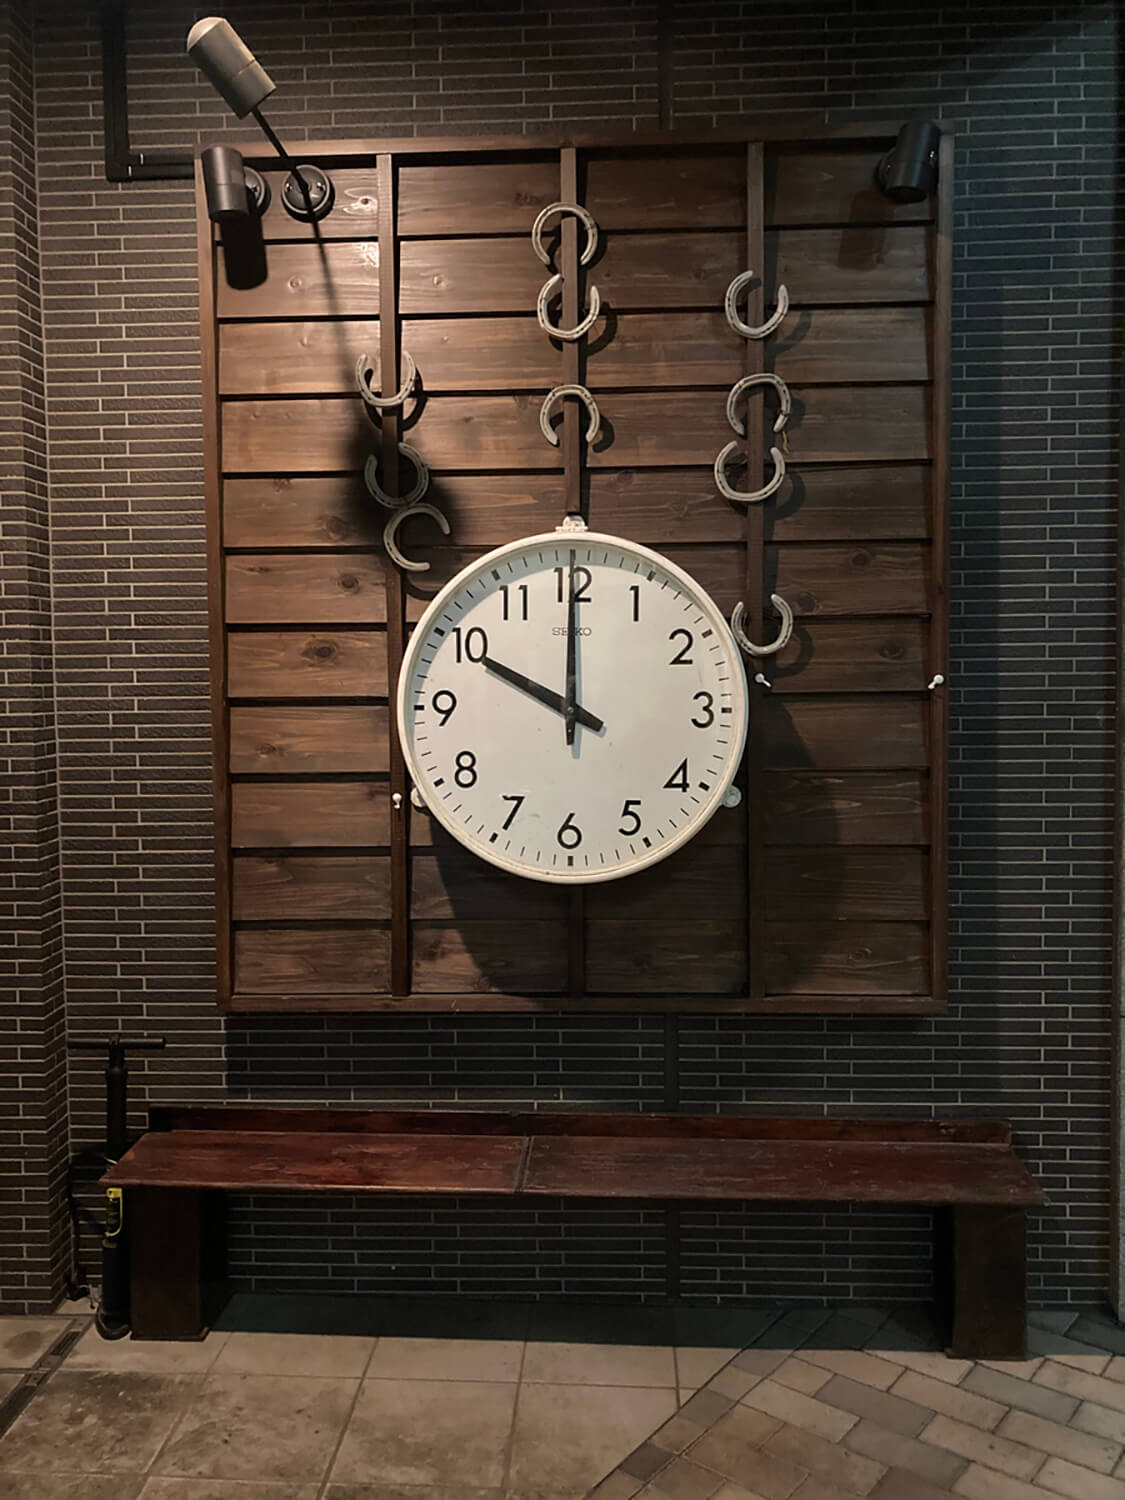 府中の居酒屋の時計。いつ見ても10時を指している。